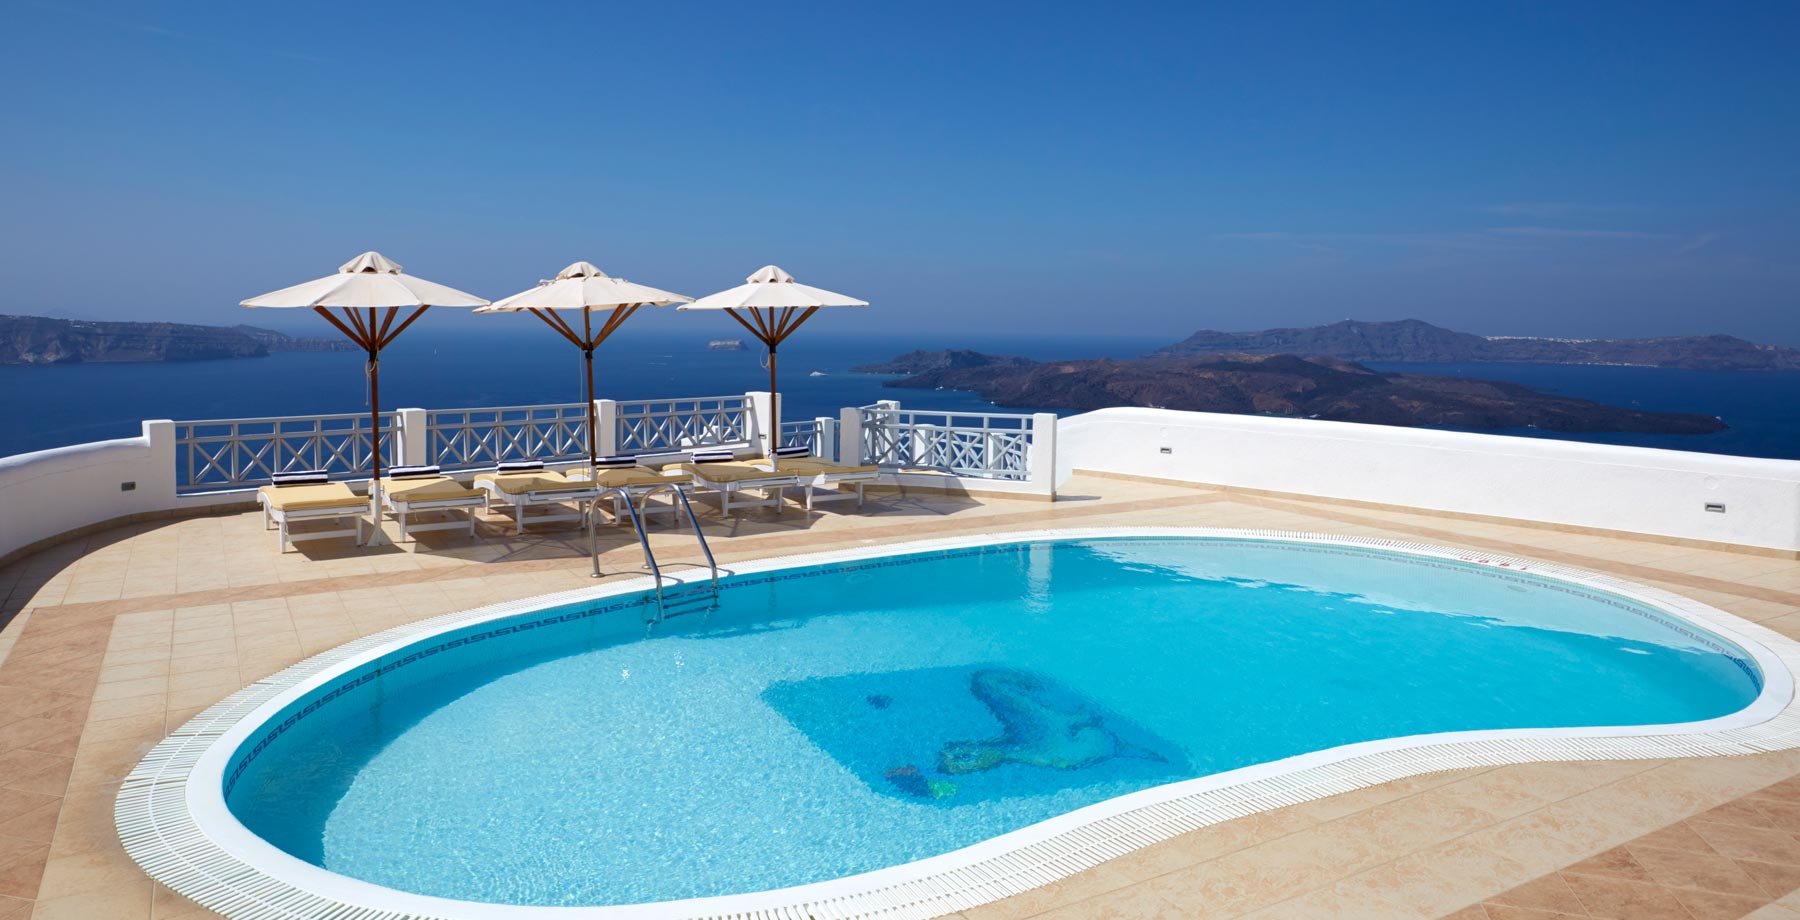 5 stars hotels in greece